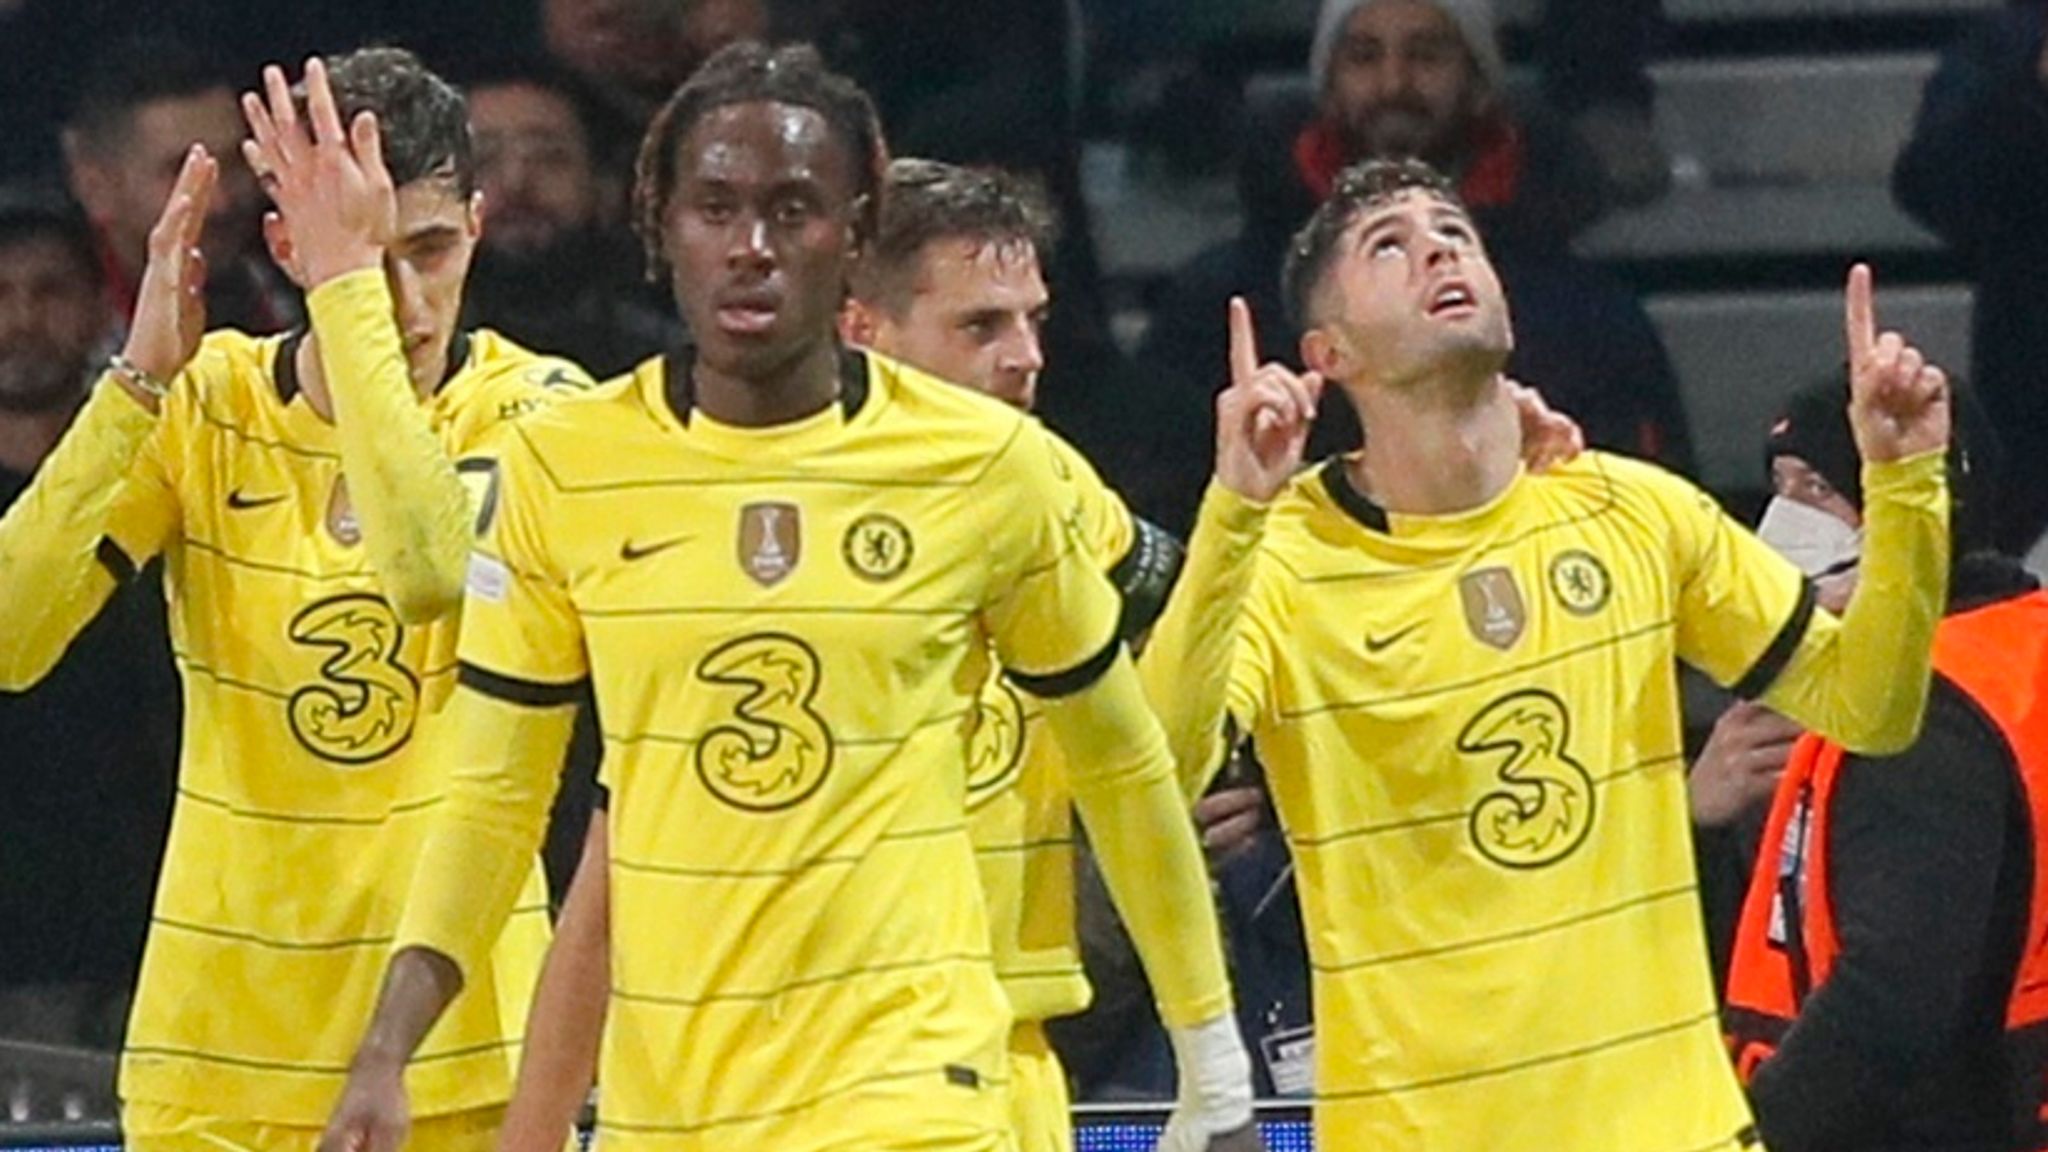 Chelsea, Villarreal advance into Champions League quarter-finals